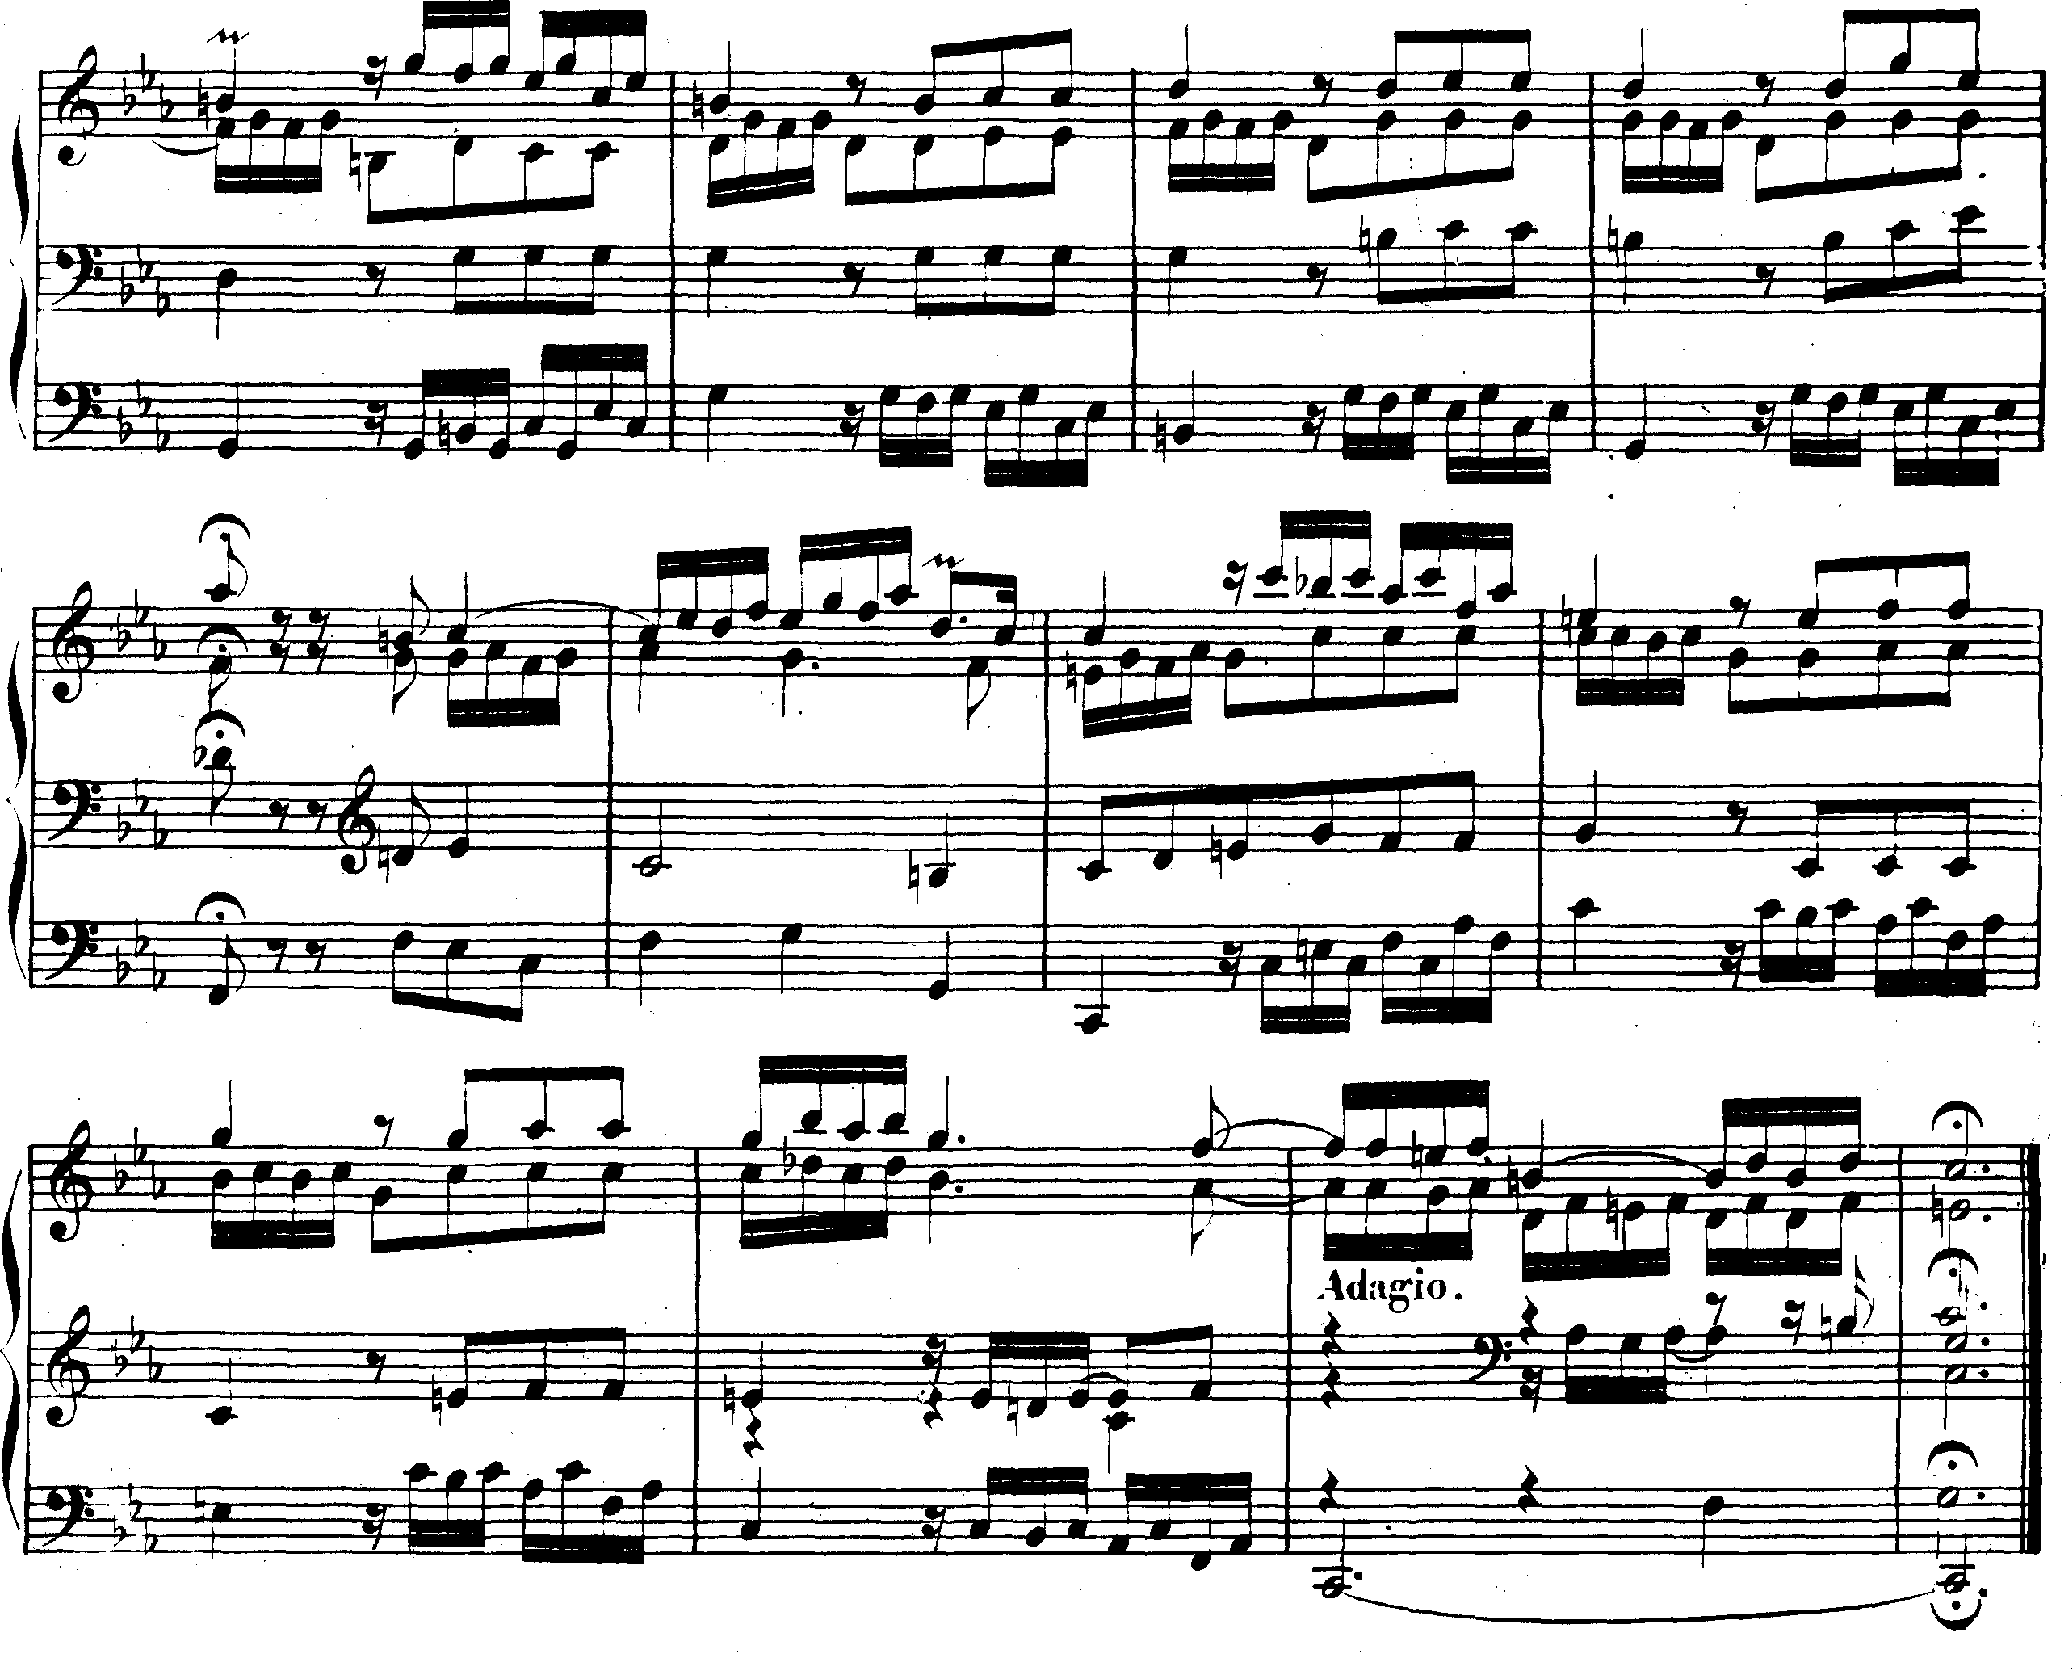 Neapolitaner in Passacaglia in c-Moll (Bach)